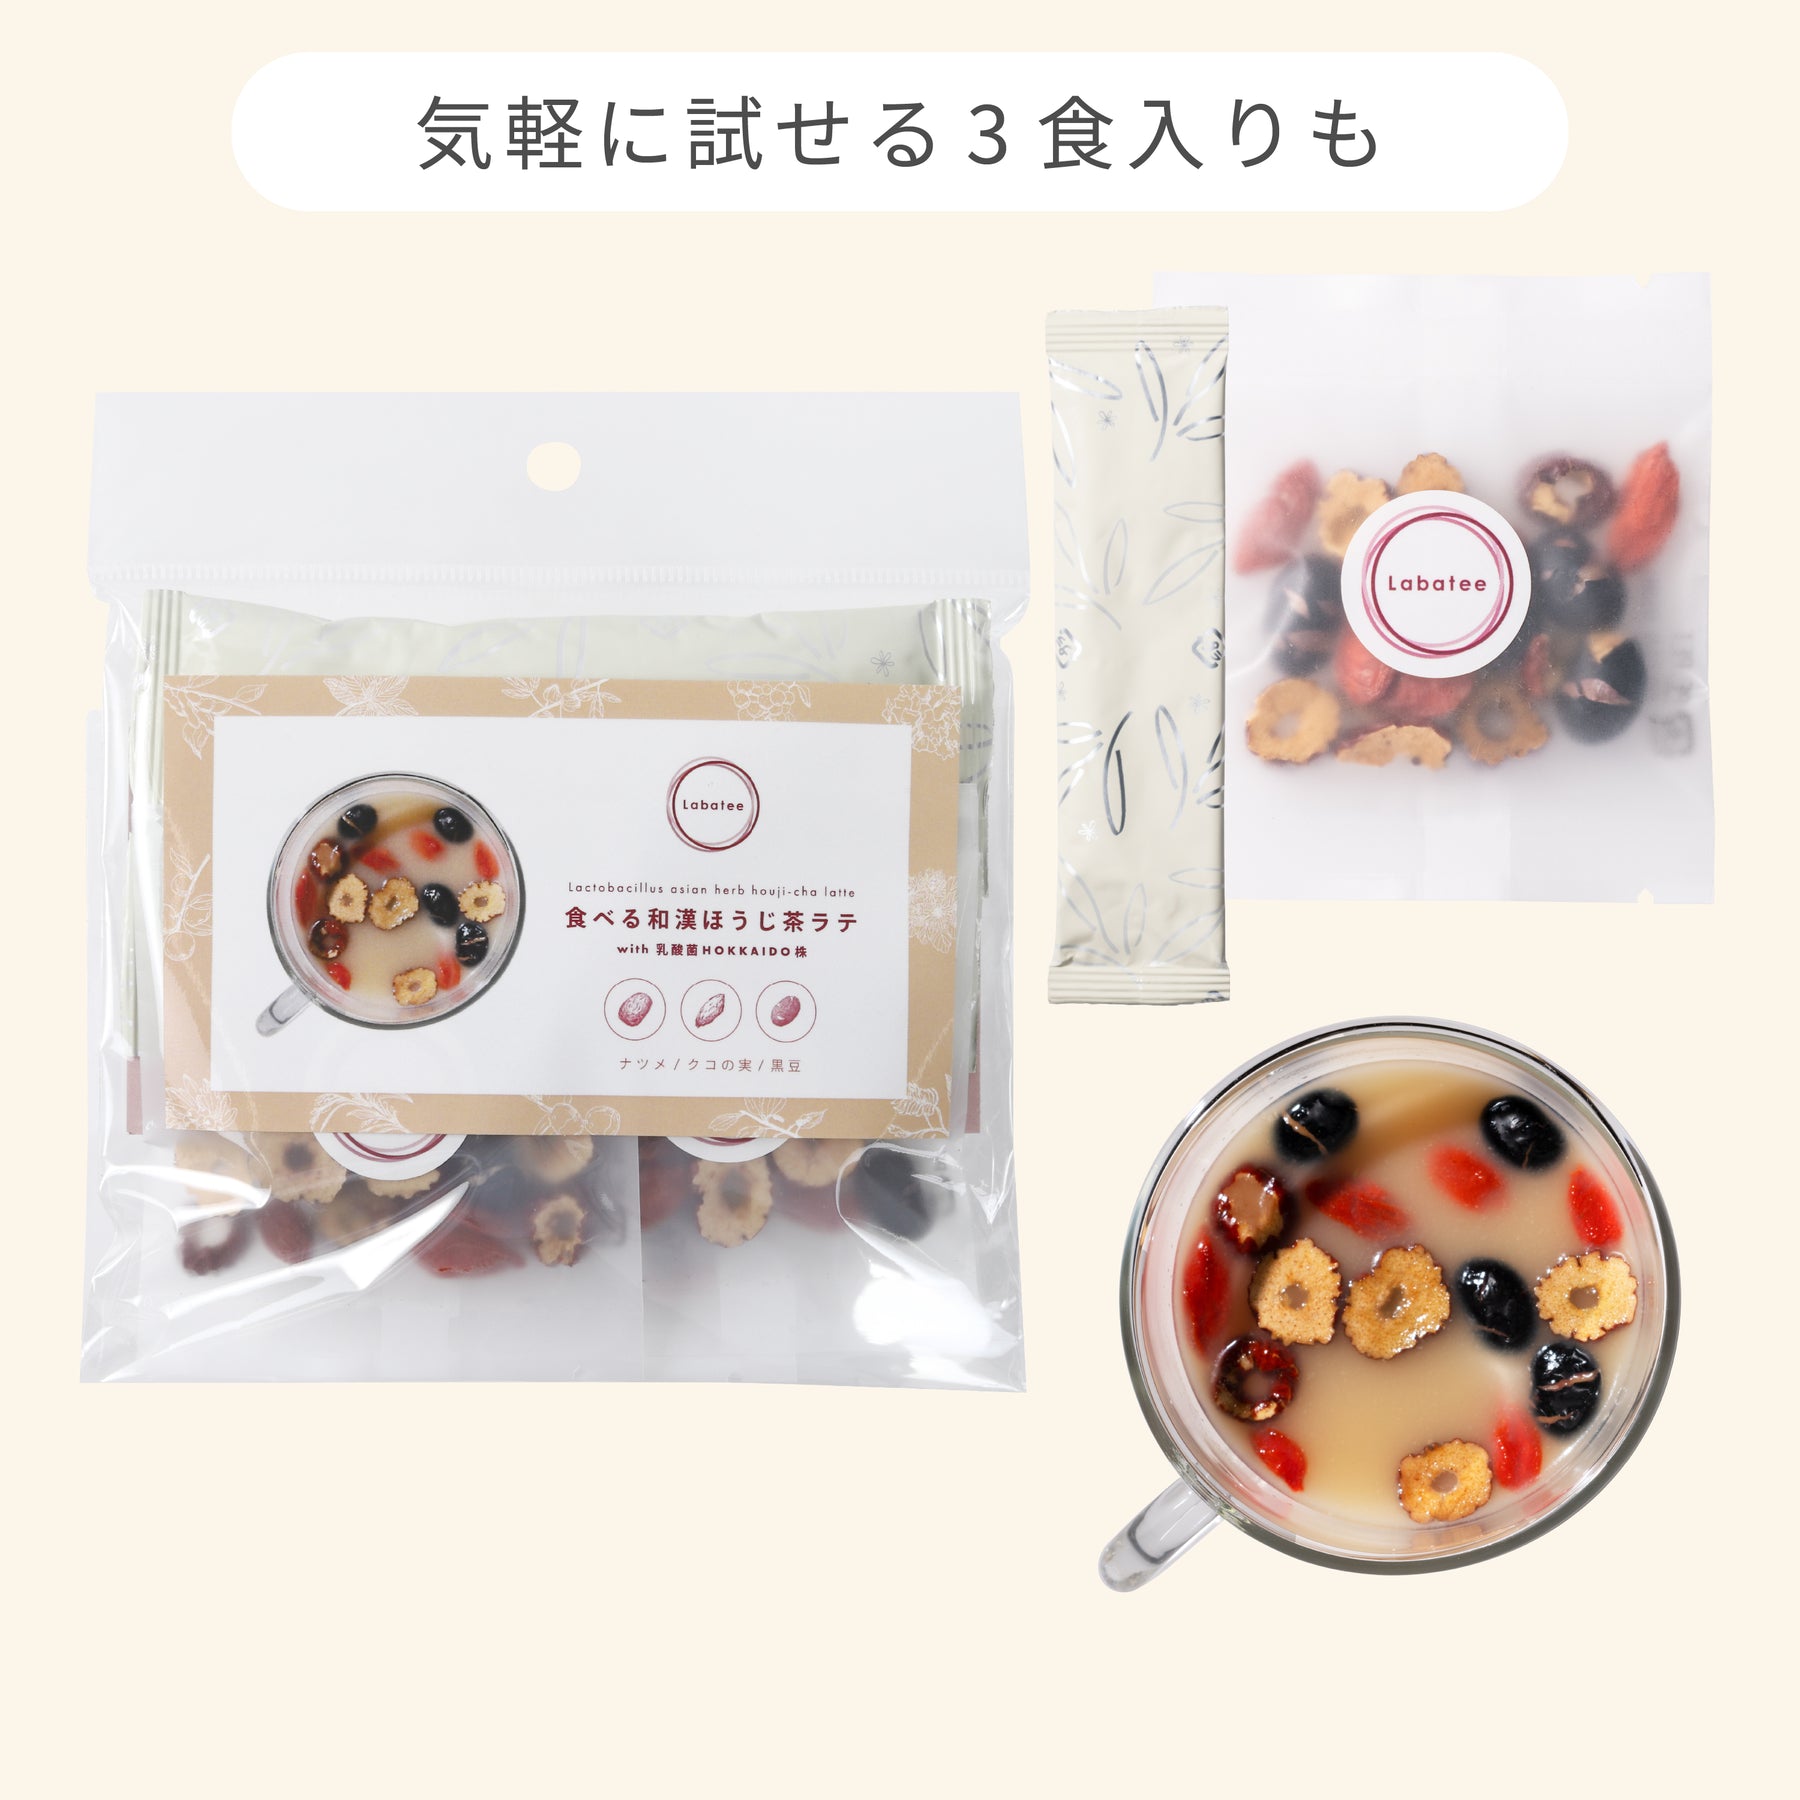 食べる和漢ほうじ茶ラテ with 乳酸菌HOKKAIDO株 ナツメ・クコの実・黒豆